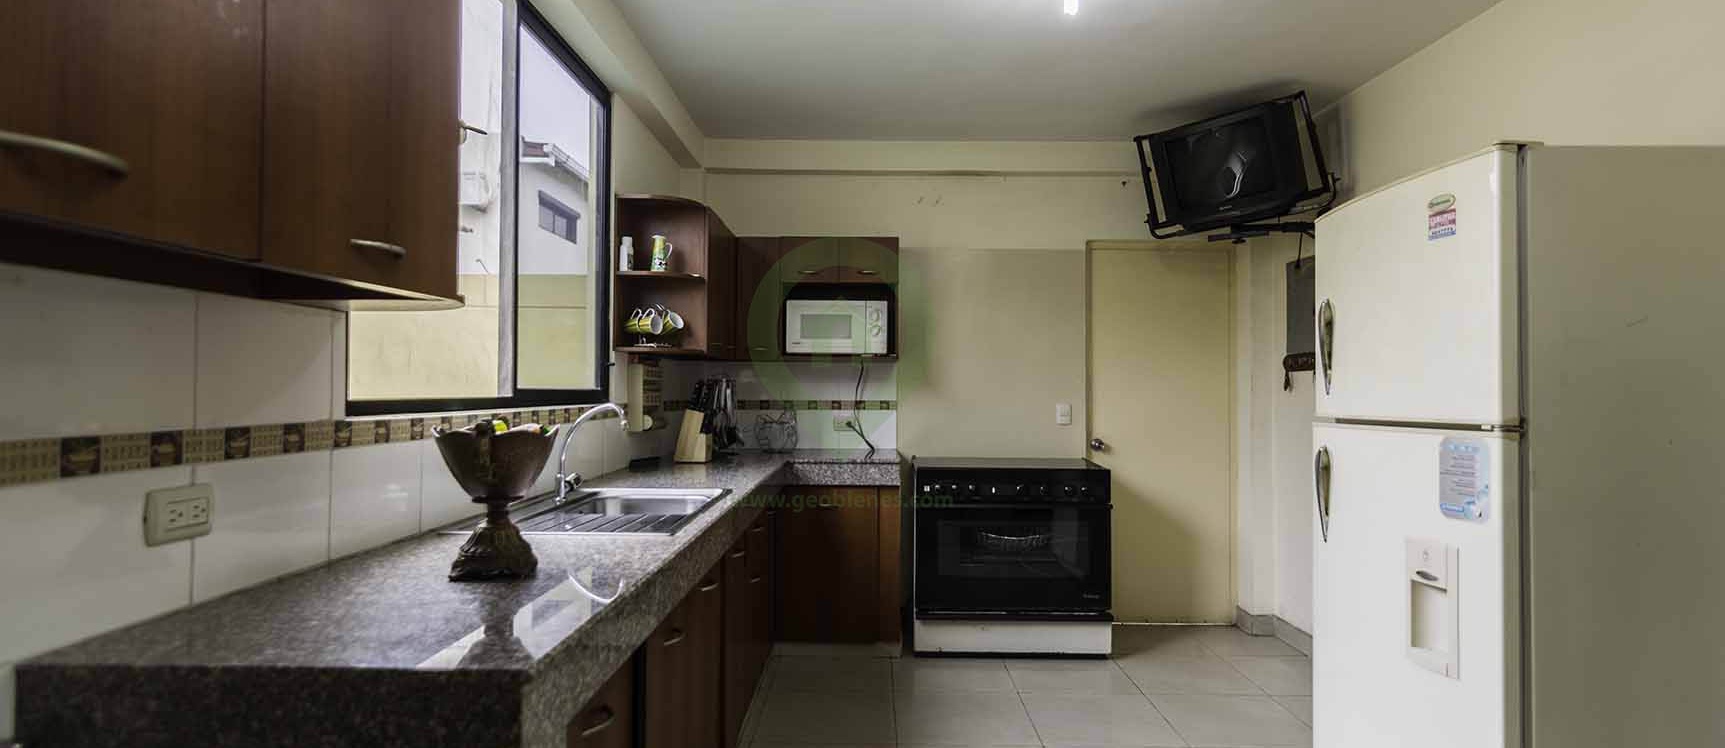 GeoBienes - Casa en venta en Urbanización Milann vía a Samborondón - Plusvalia Guayaquil Casas de venta y alquiler Inmobiliaria Ecuador